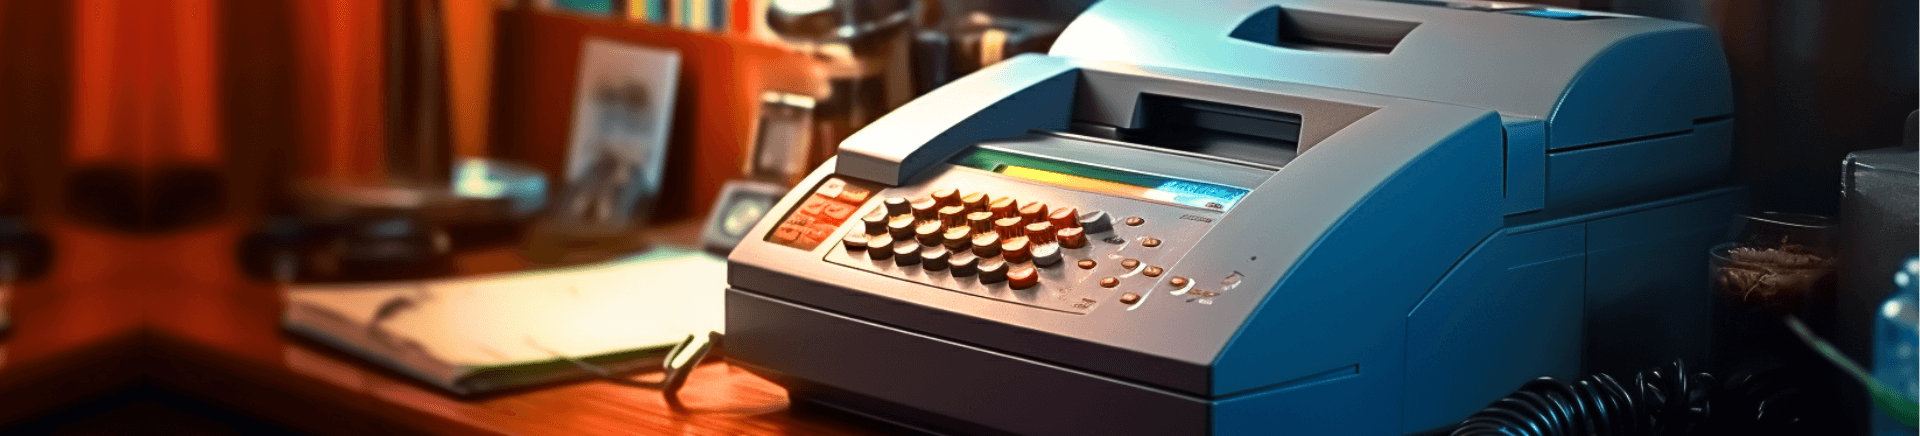 Faxgerät, Faxmaschine, Business, Kommunikation, Fax